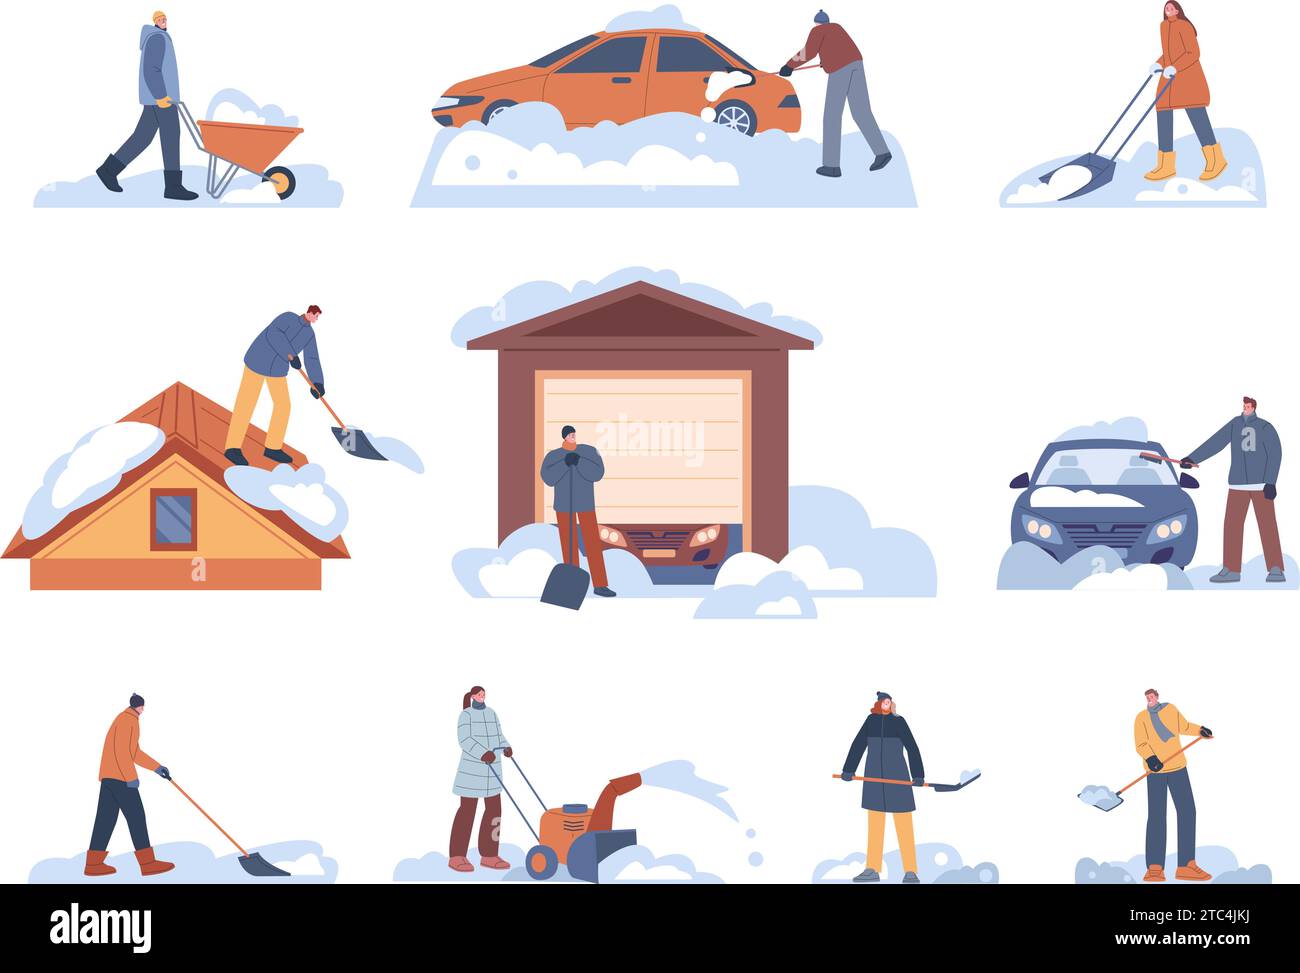 Persone che puliscono la neve. Uomini e donne puliscono auto, tetti e strade con le pale. Tempo nevoso in città e nei sobborghi, scene vettoriali di attività stagionali Illustrazione Vettoriale